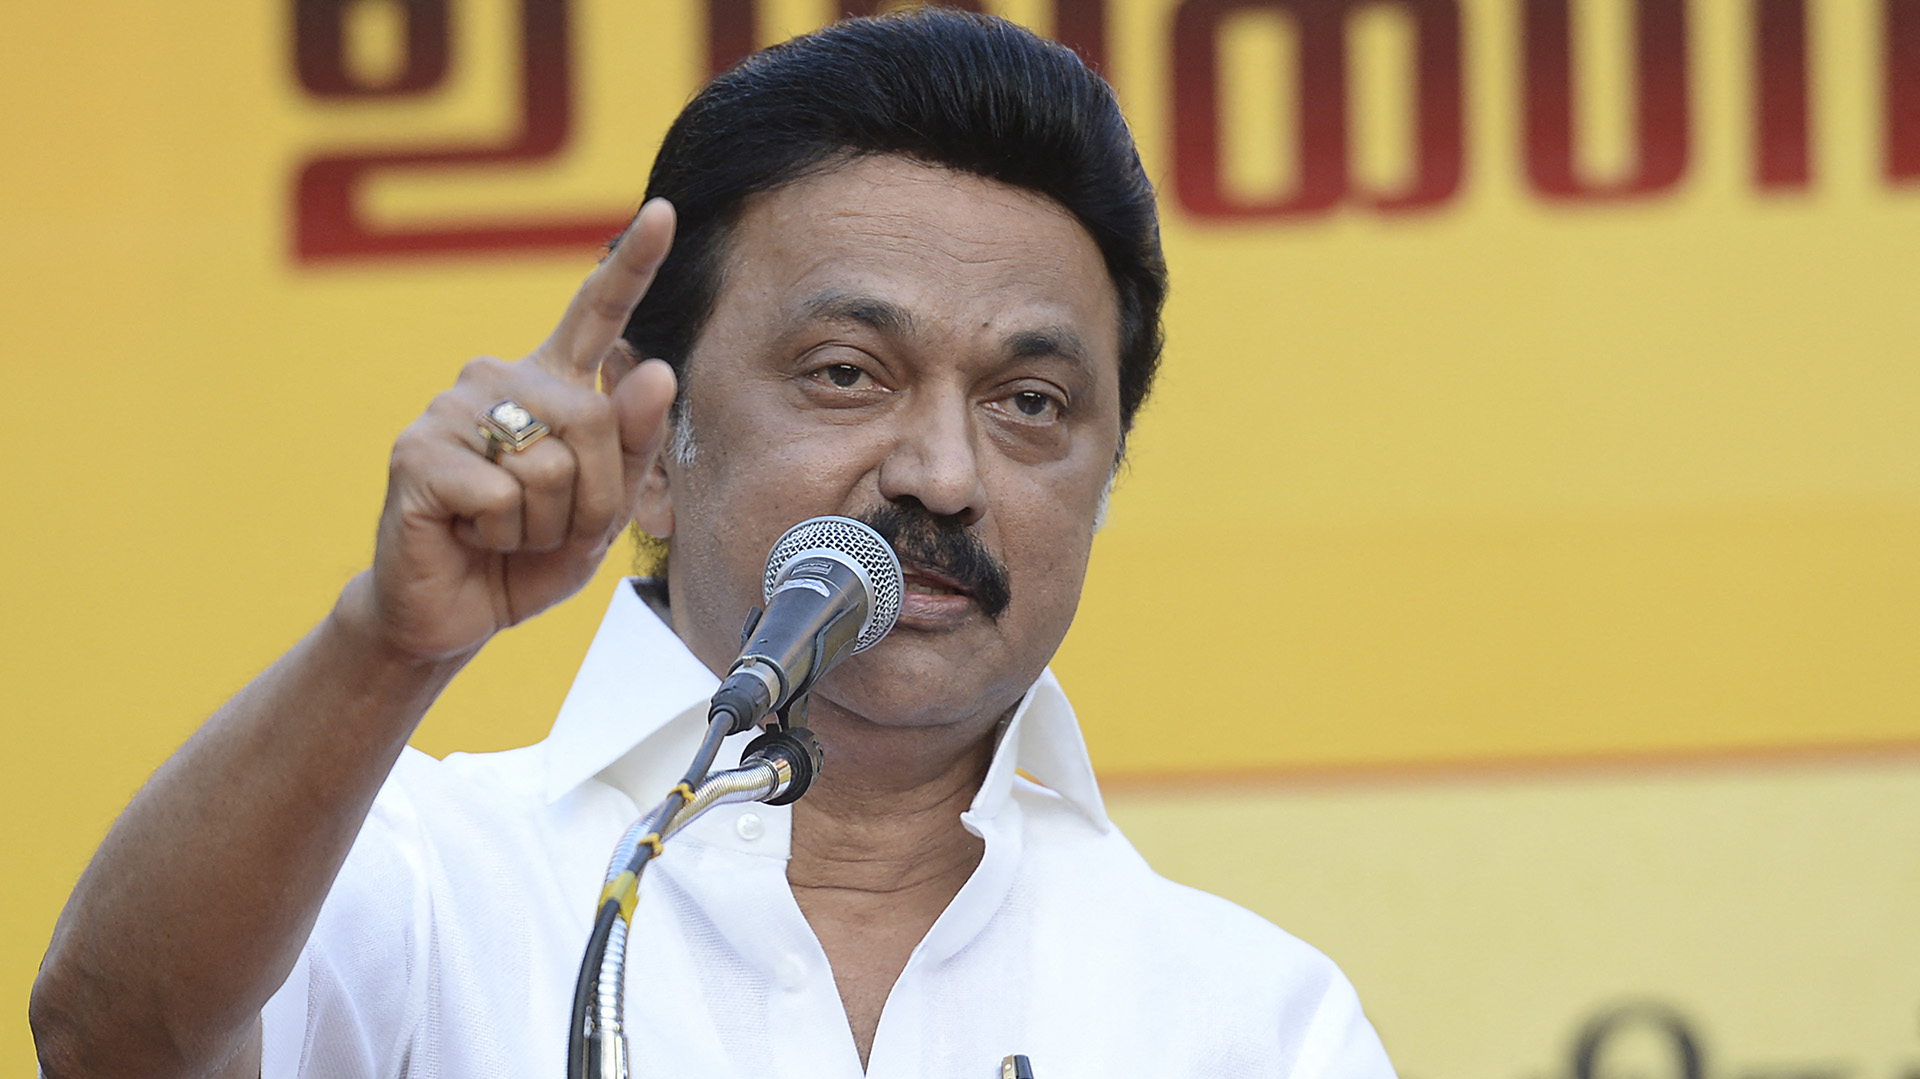 Stalin Se Prepara Para Ganar Unas Elecciones En La India Infobae